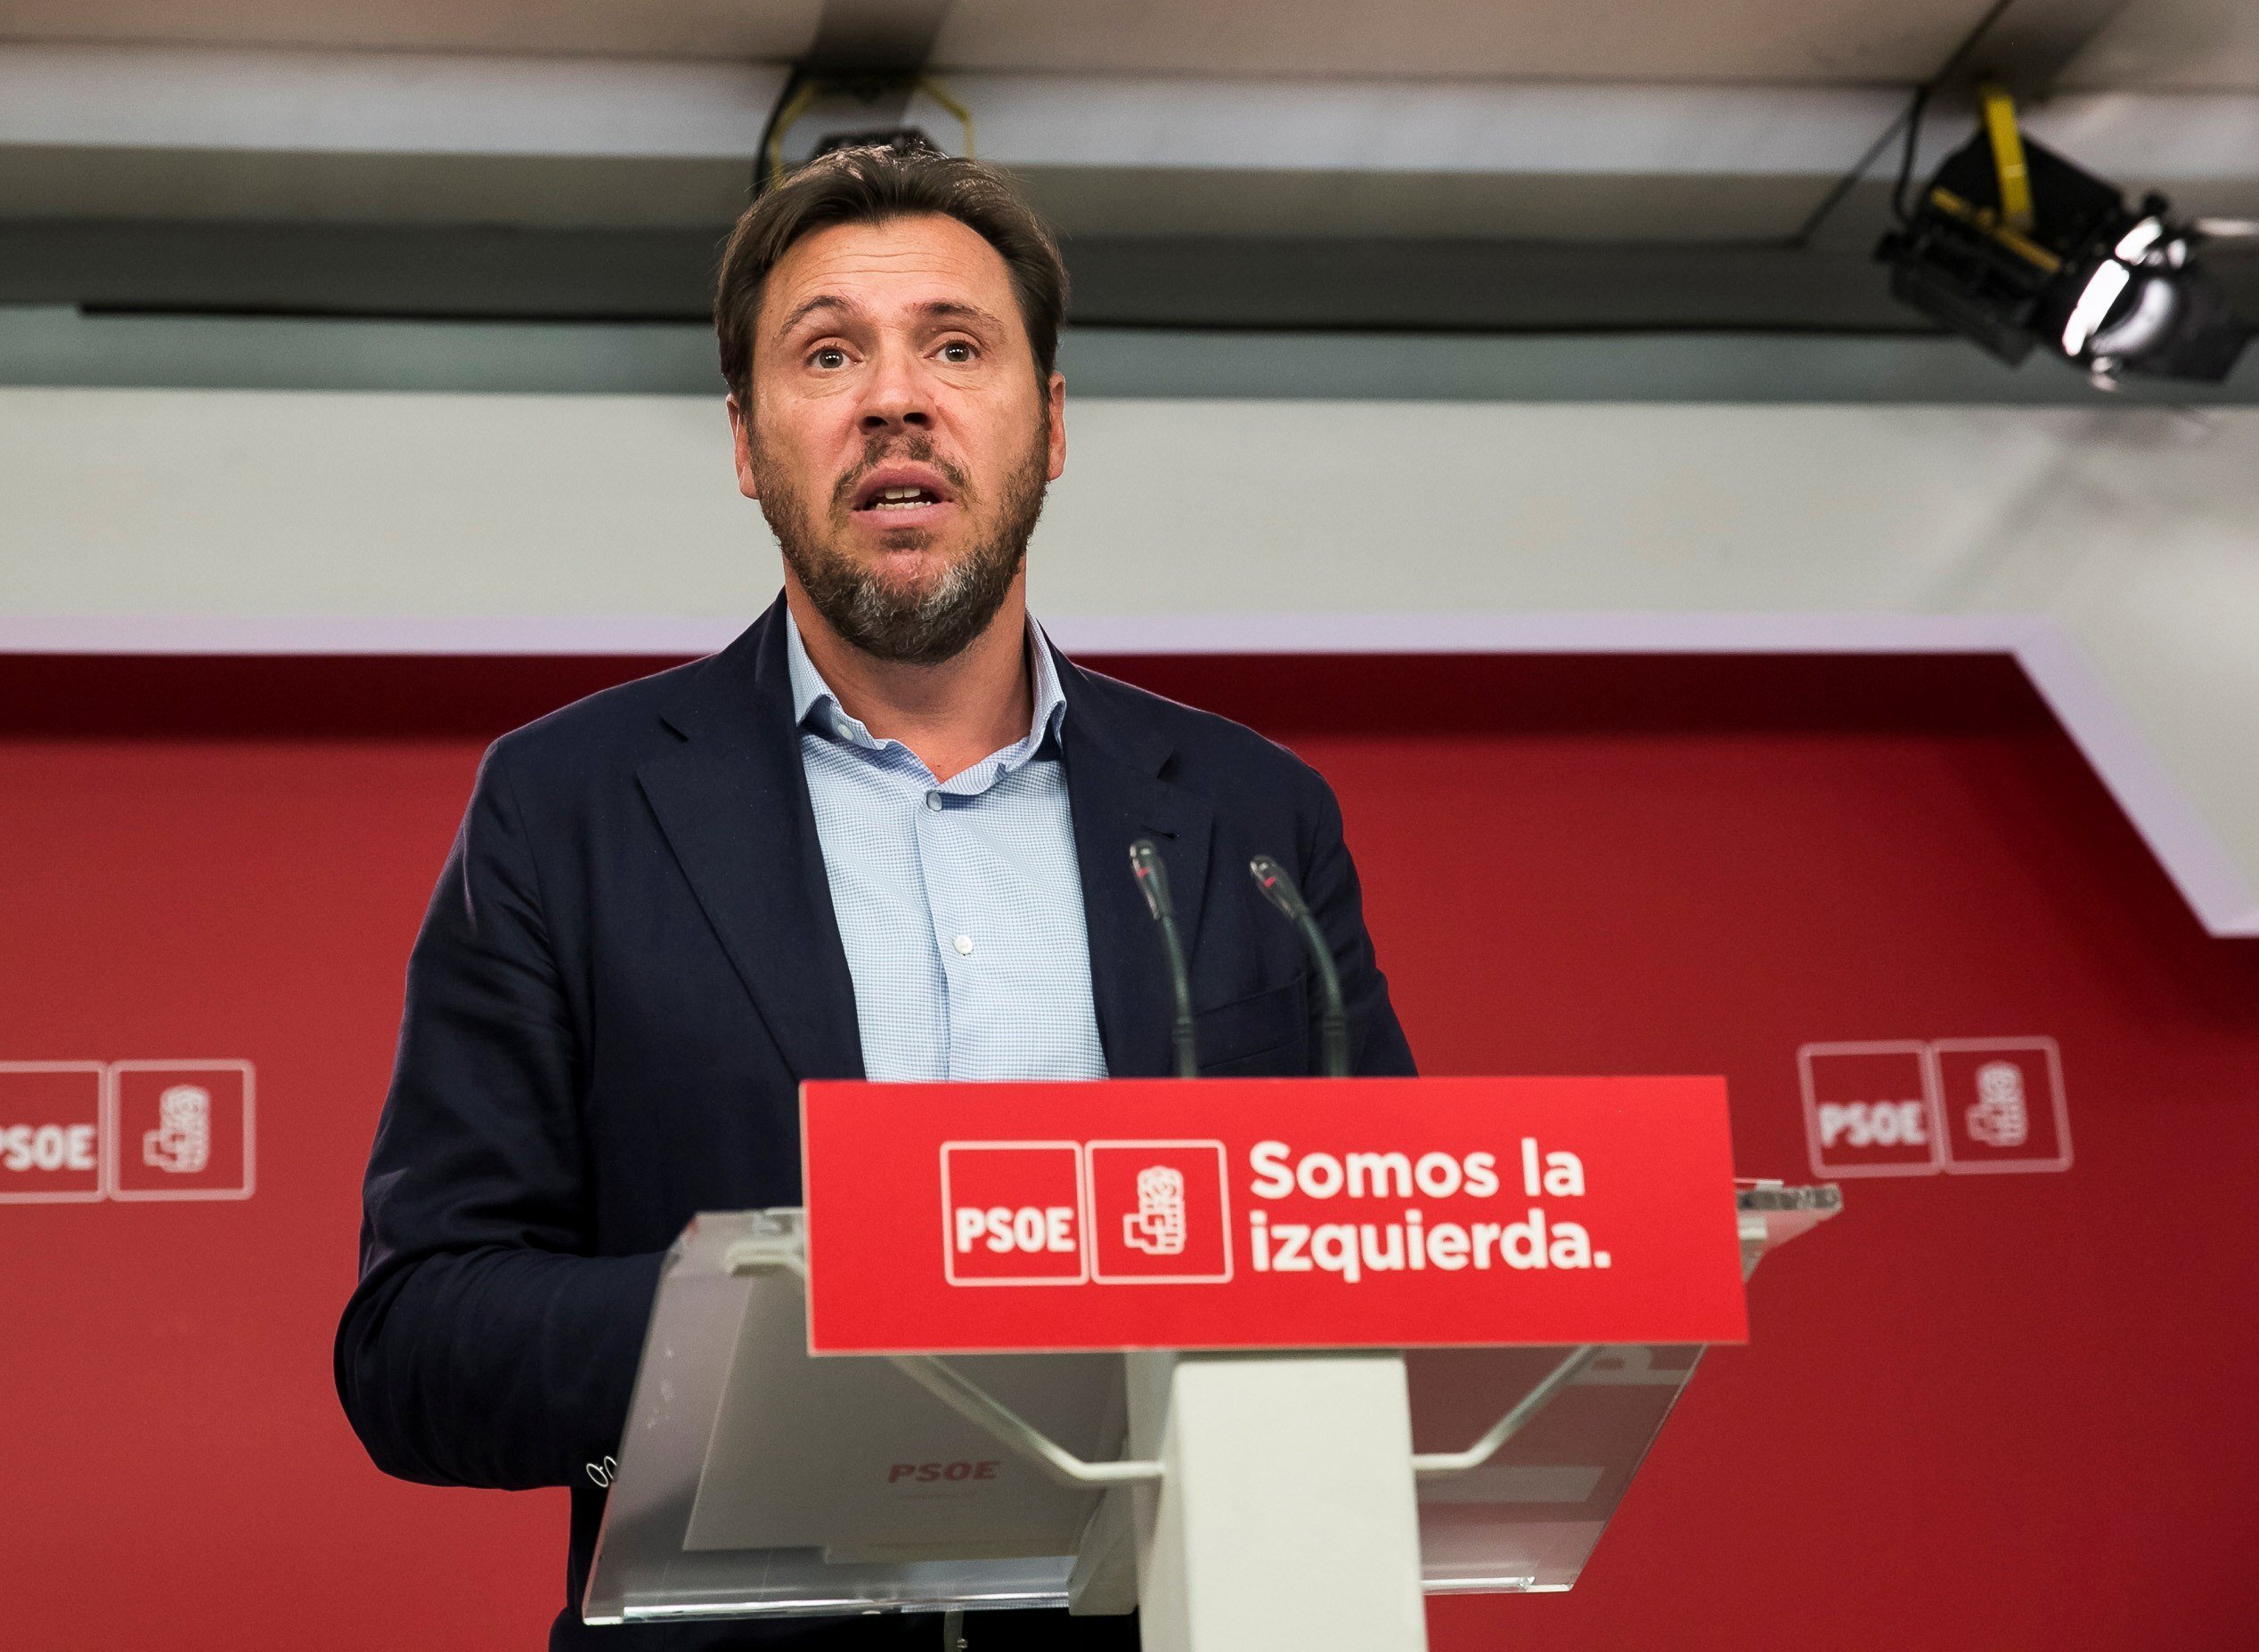 El alcalde de Valladolid (PSOE) apuesta por abstenerse y evitar que Vox gobierne